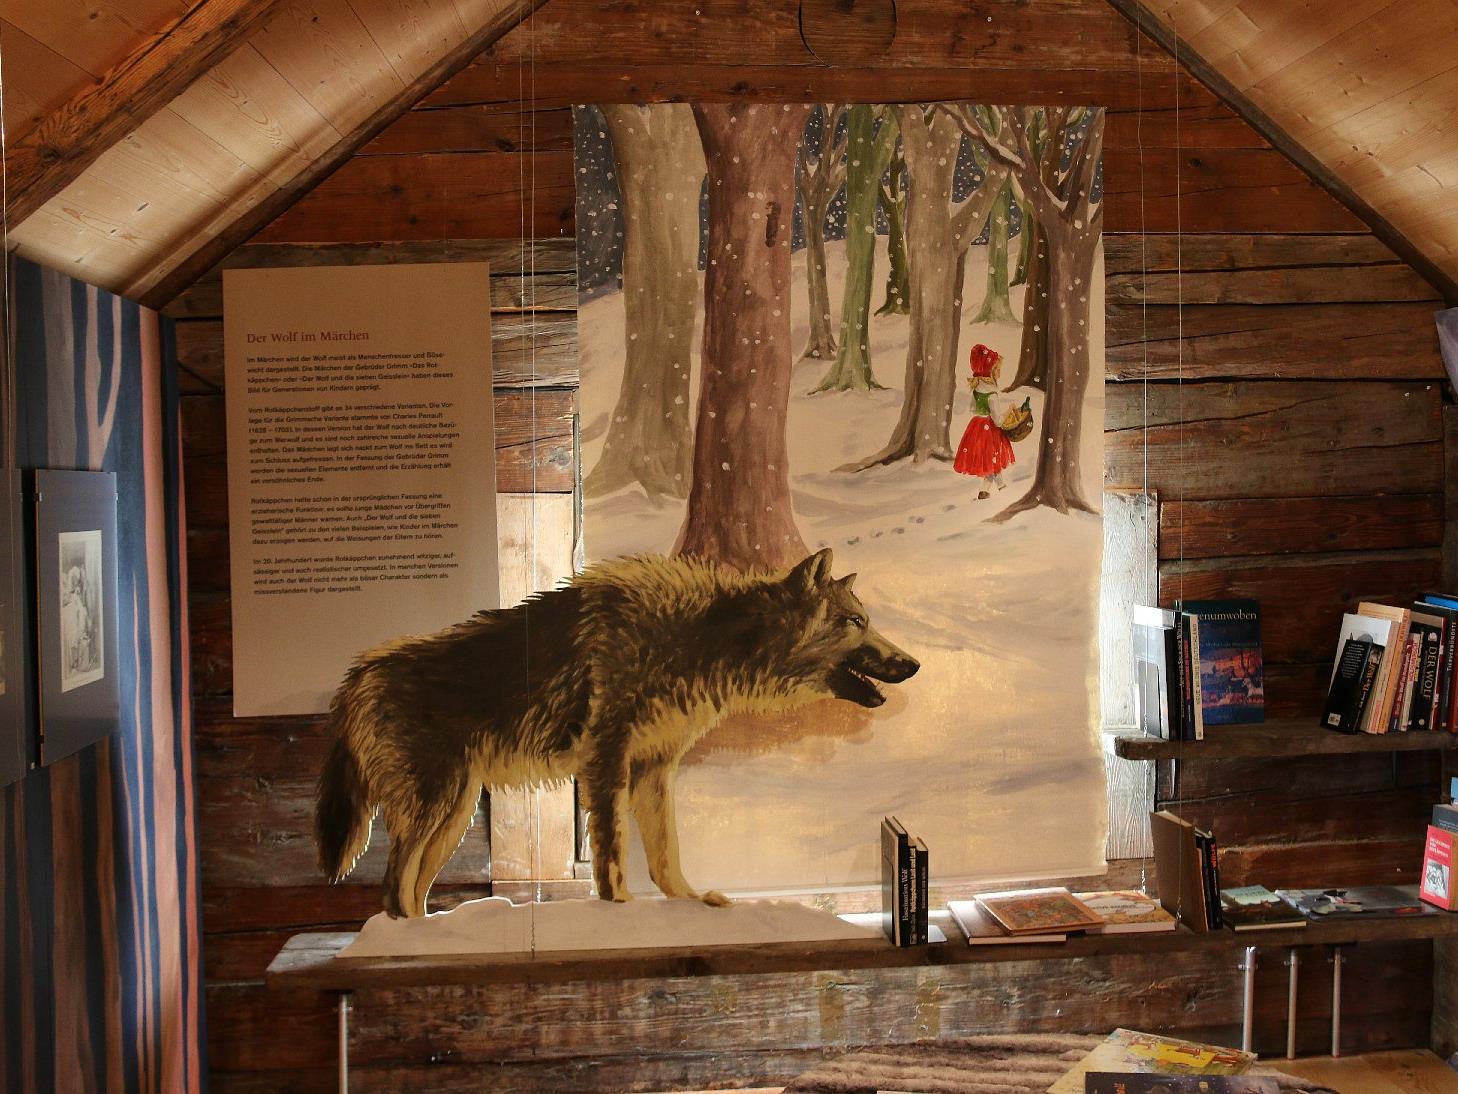 In diesem liebevoll dekorierten Raum geht es um Märchen und Sagen mit dem Wolf.